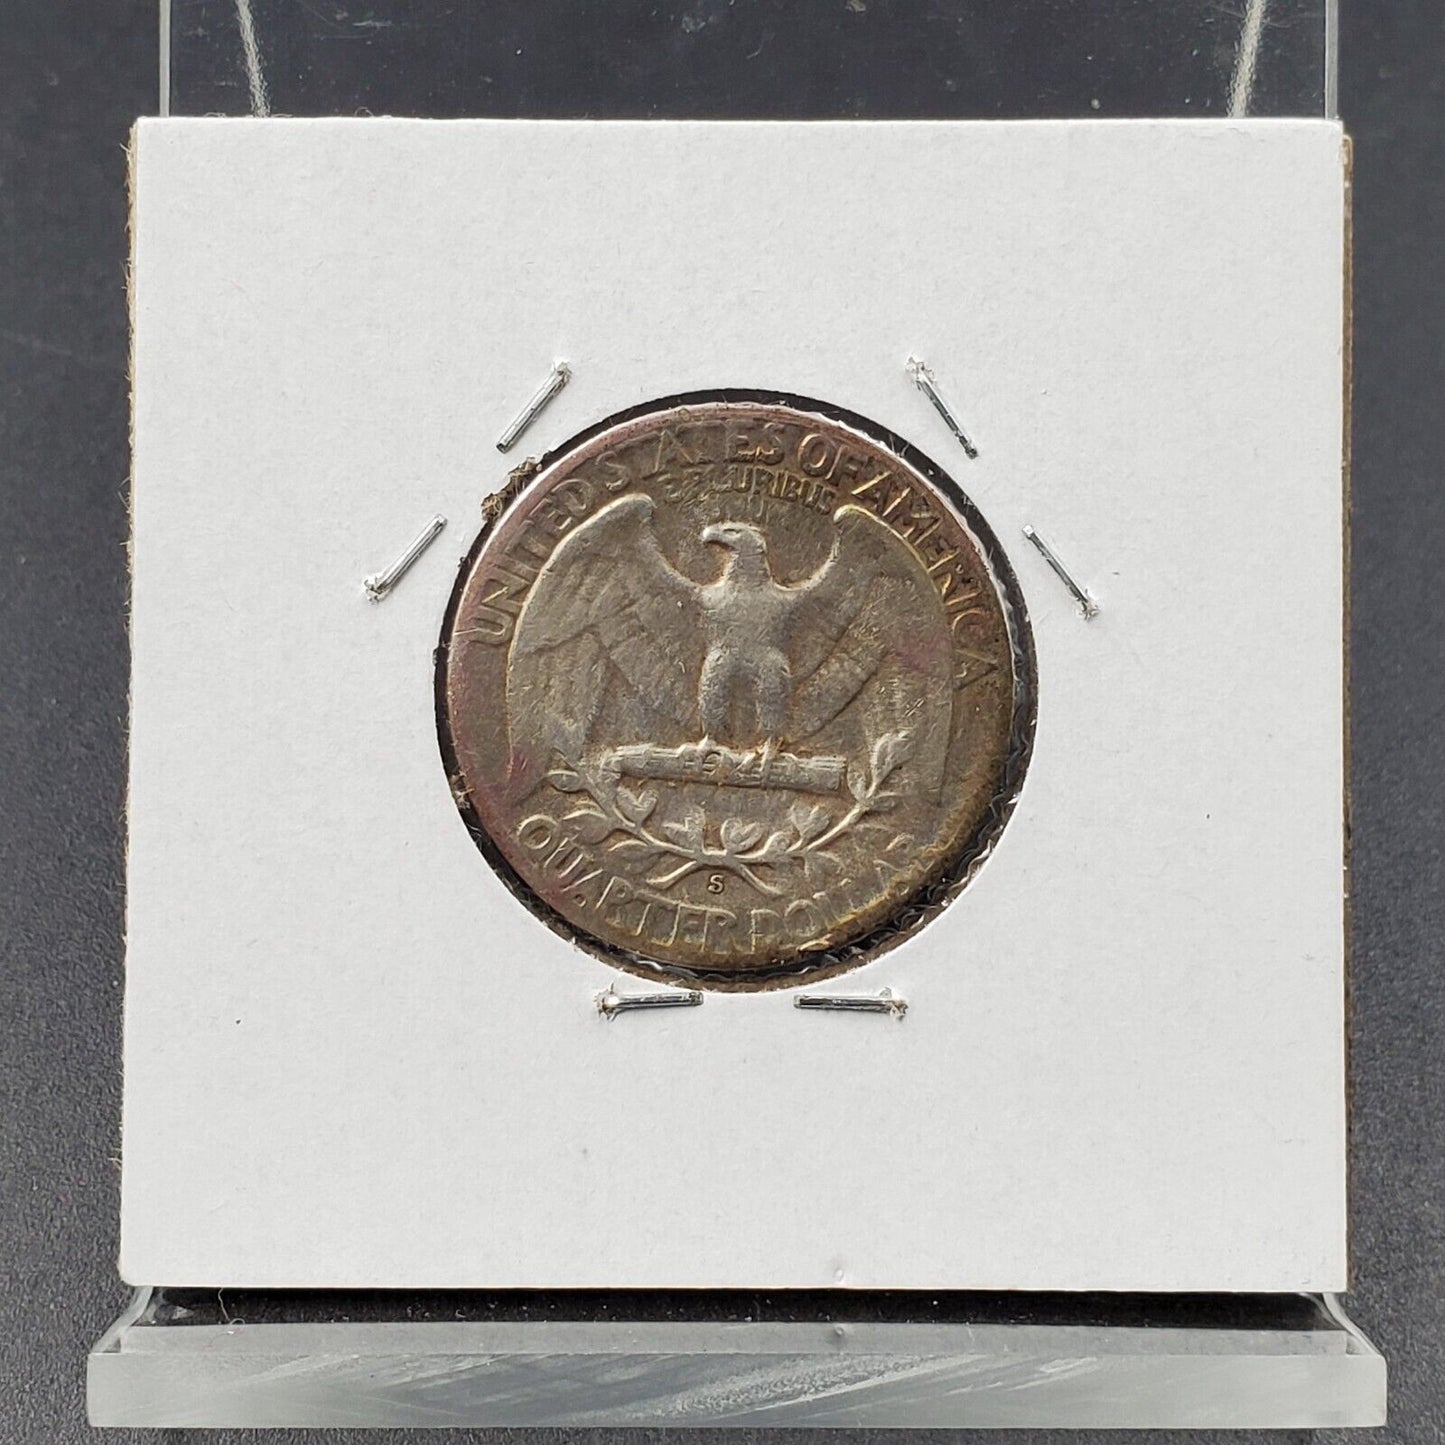 1952 S 25C Washington Quarter Silver Coin